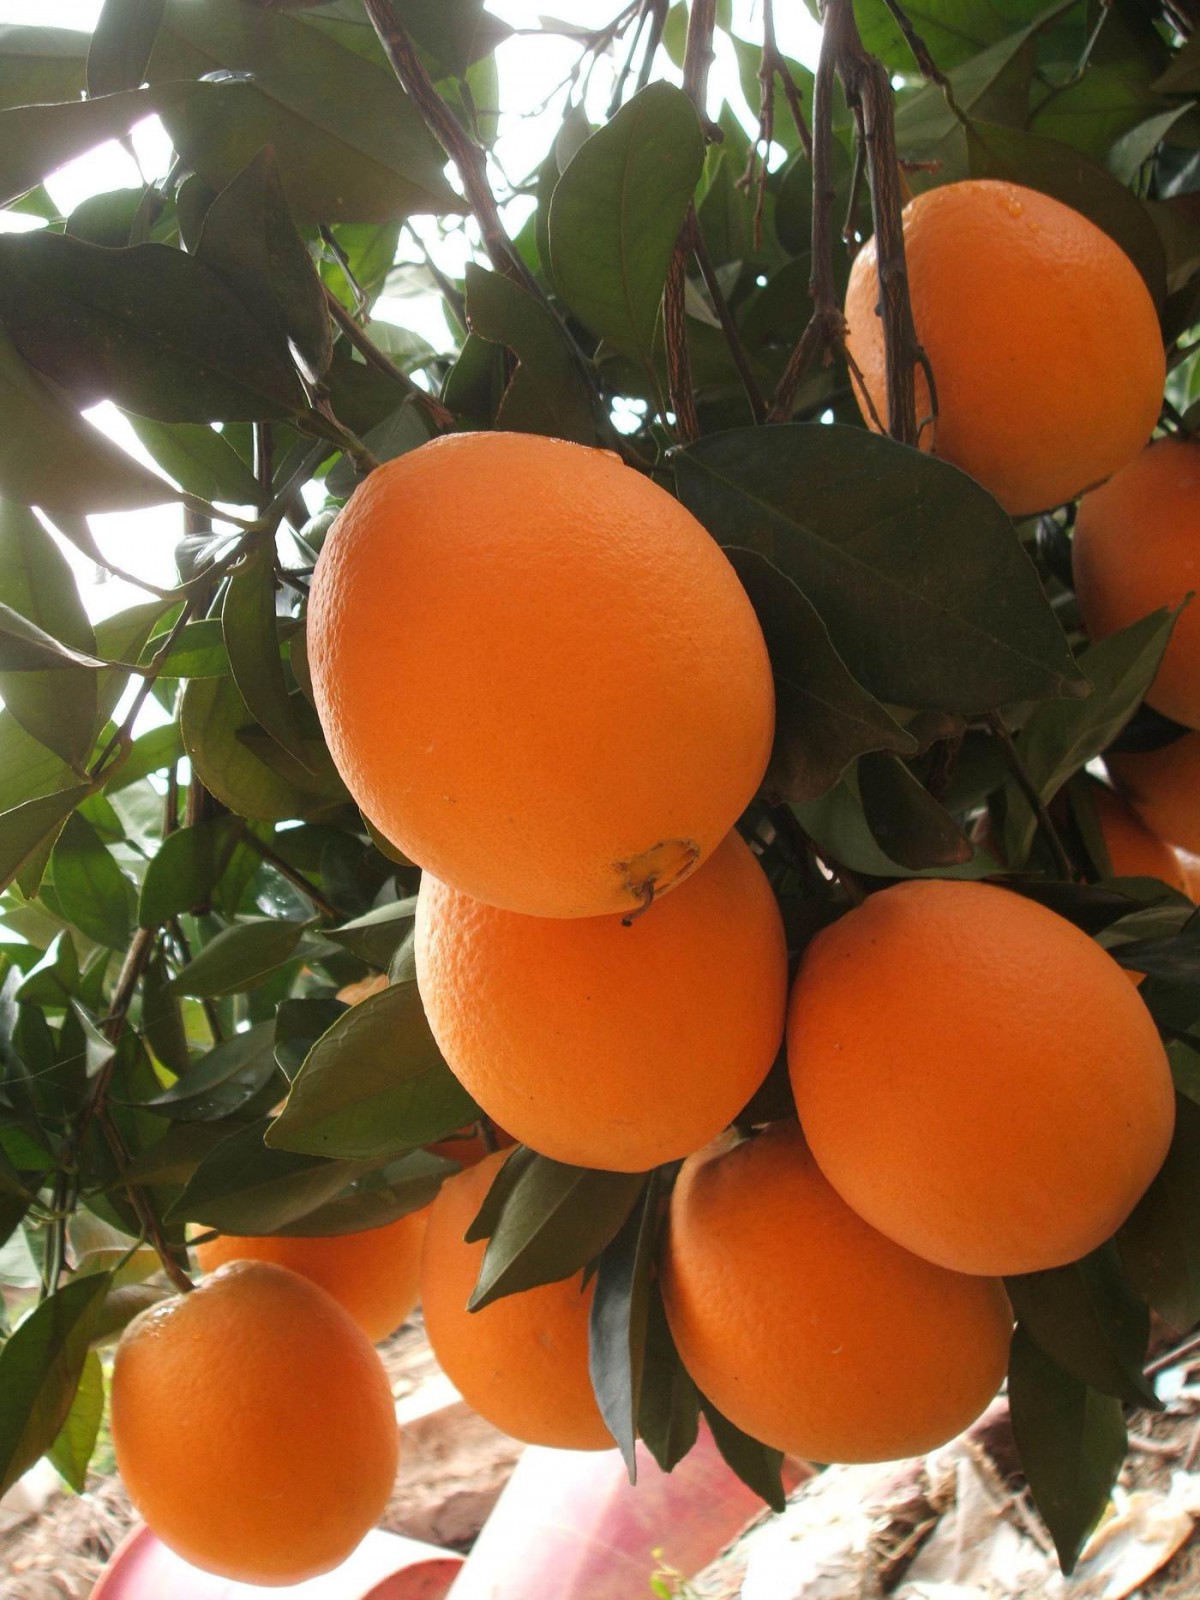 赣州脐橙市场发展调研 赣南脐橙产业发展现状及投资趋势调研分析